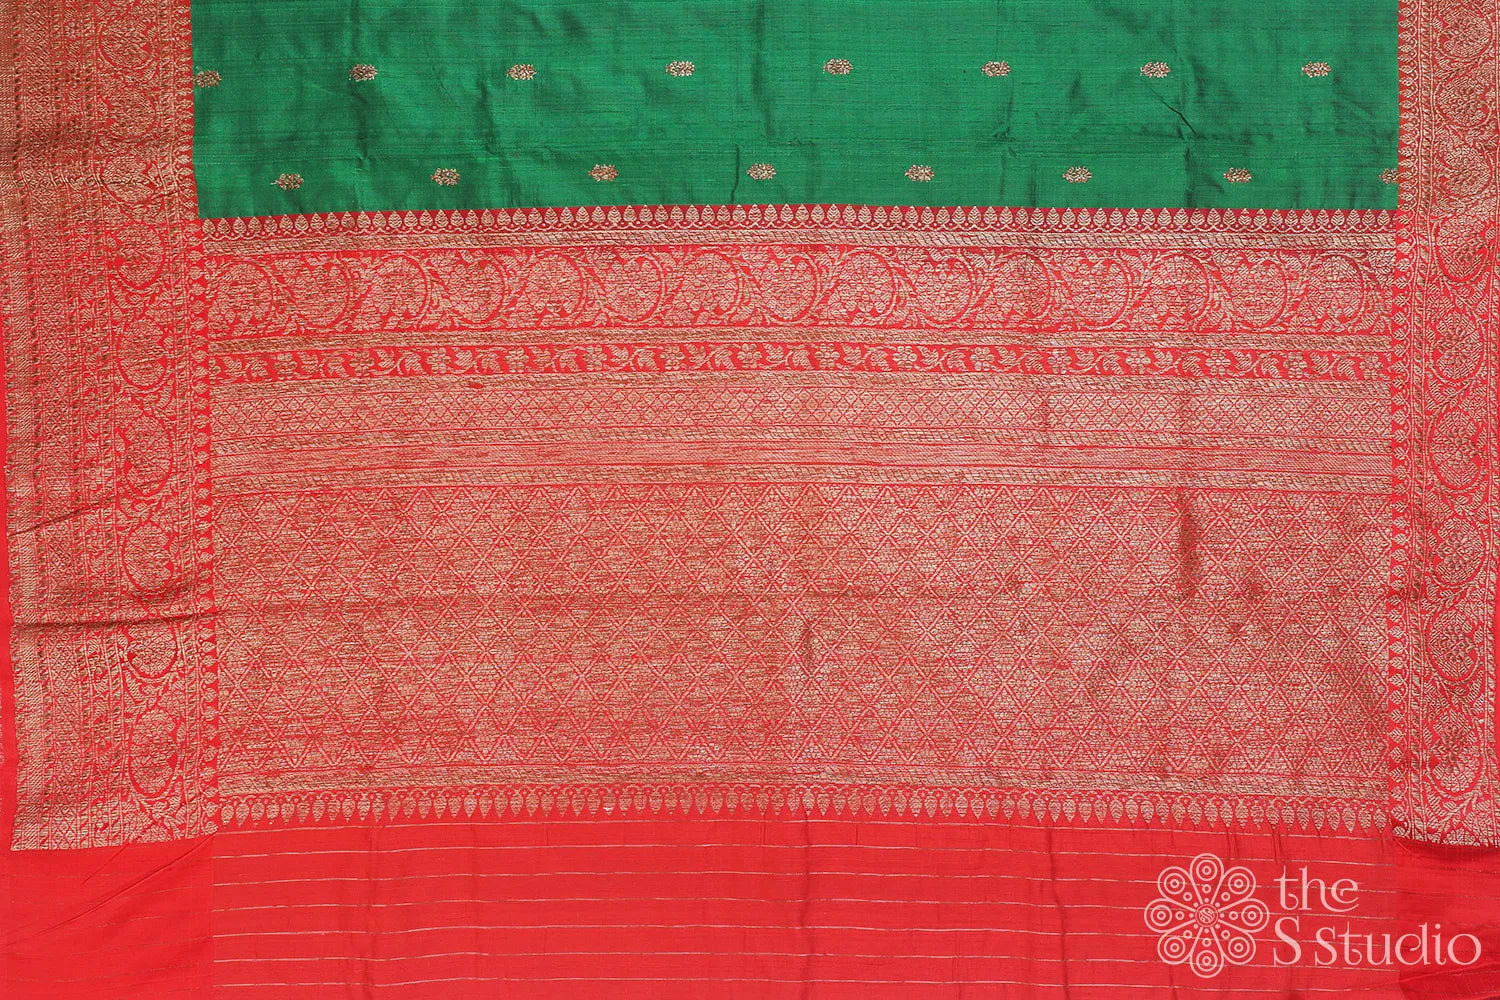 Green banarasi raw silk saree with antique zari border